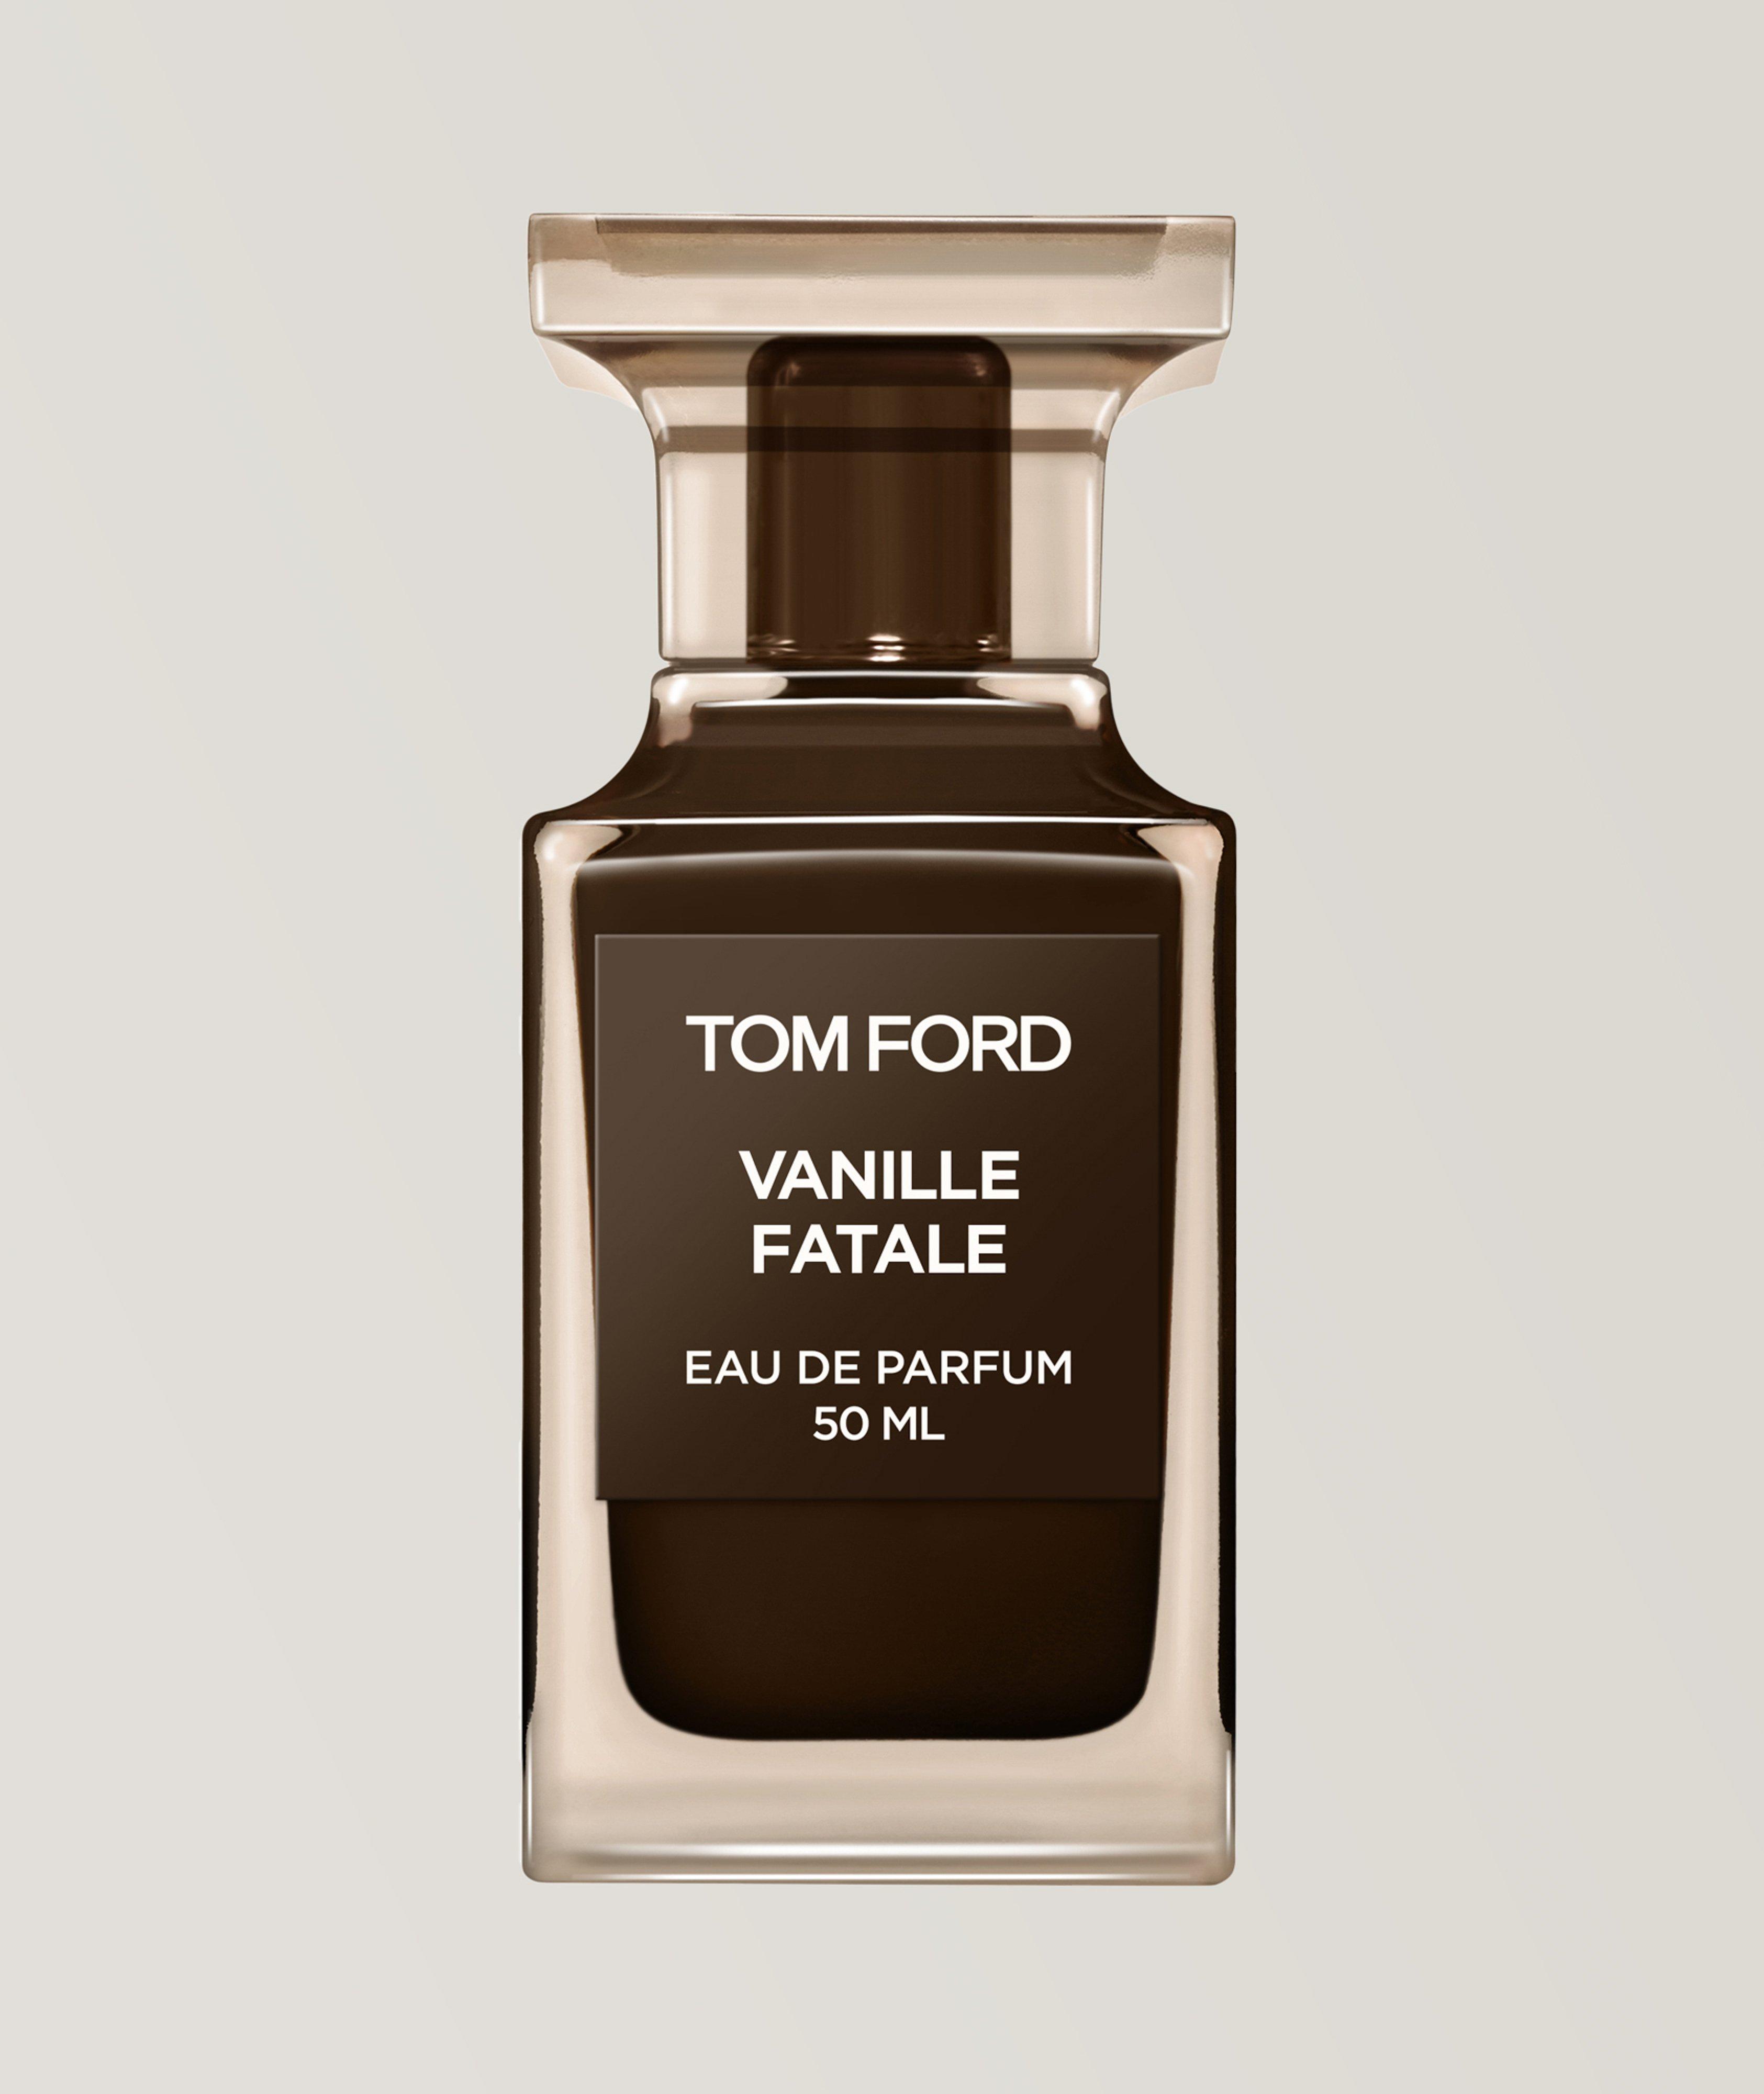 TOM FORD Eau de parfum Vanille fatale (50 ml)